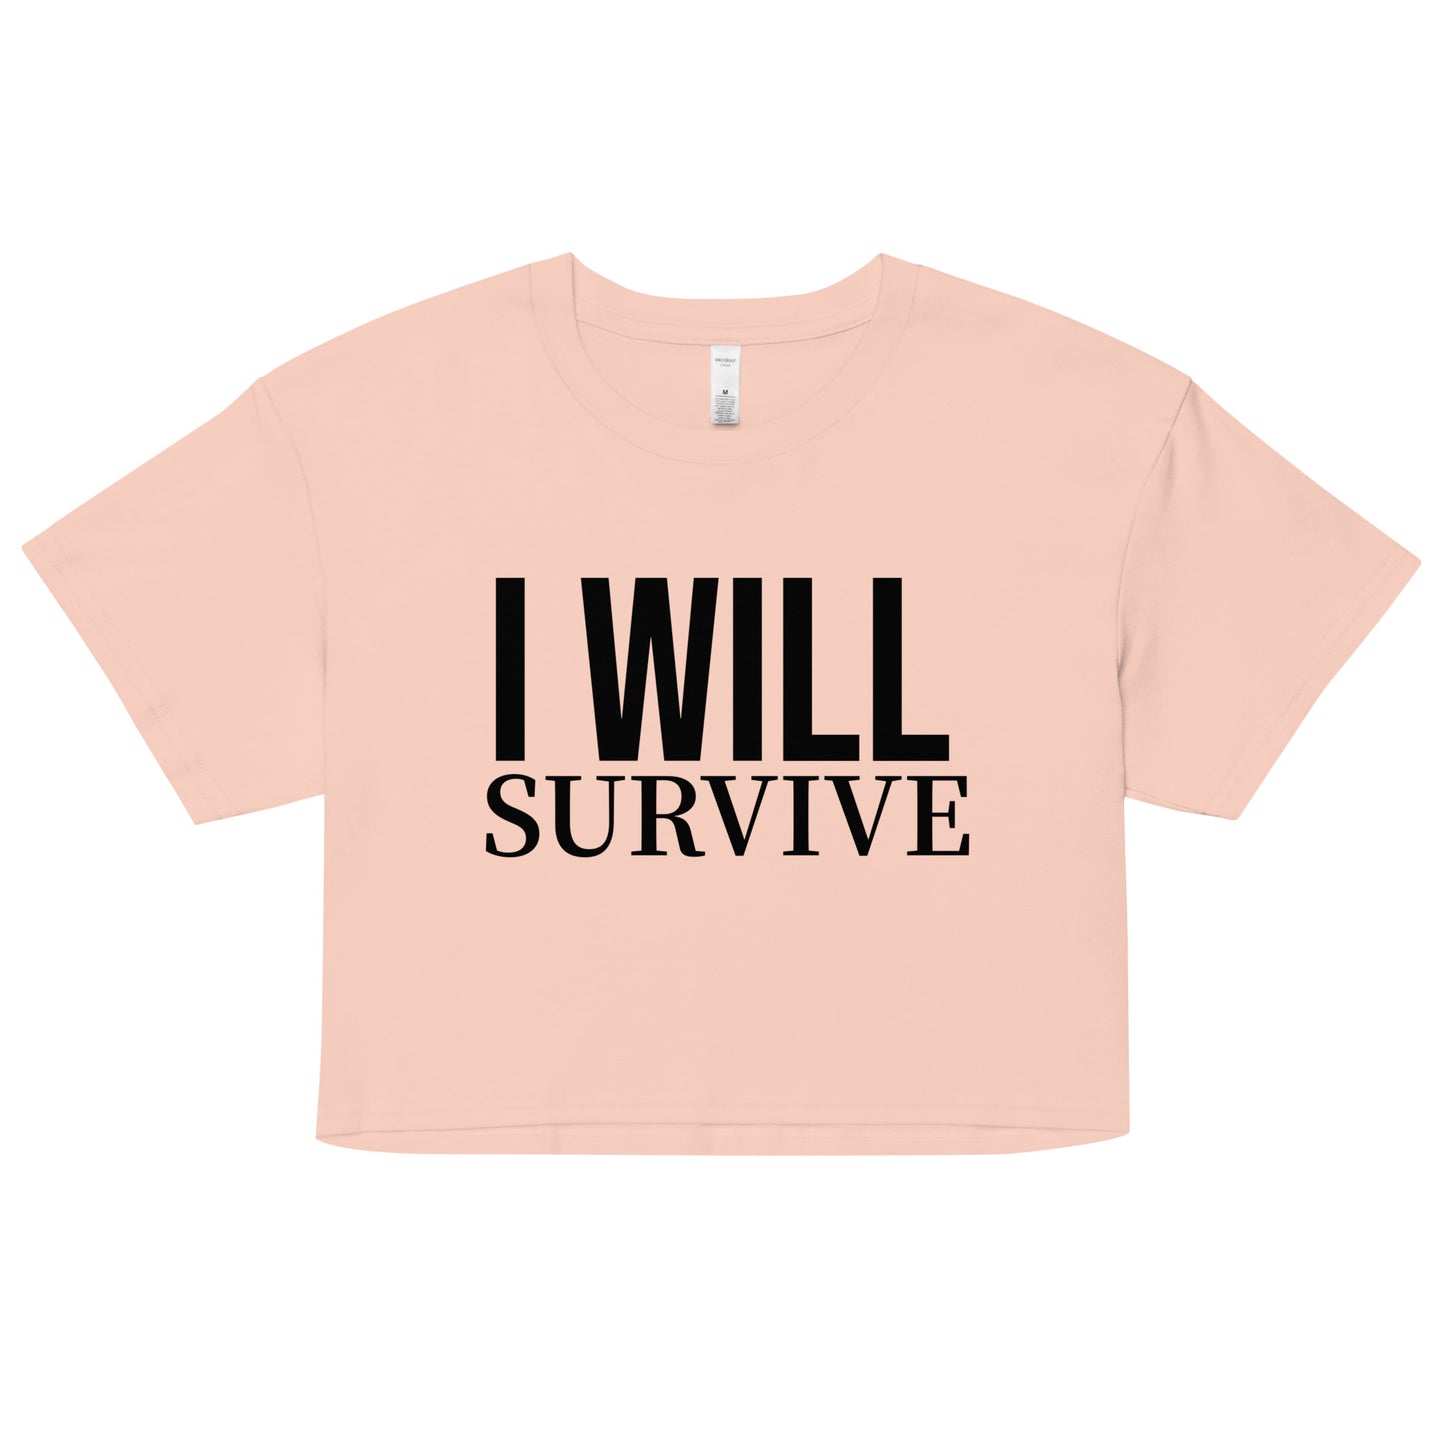 I WILL SURVIVE (Women’s crop top)